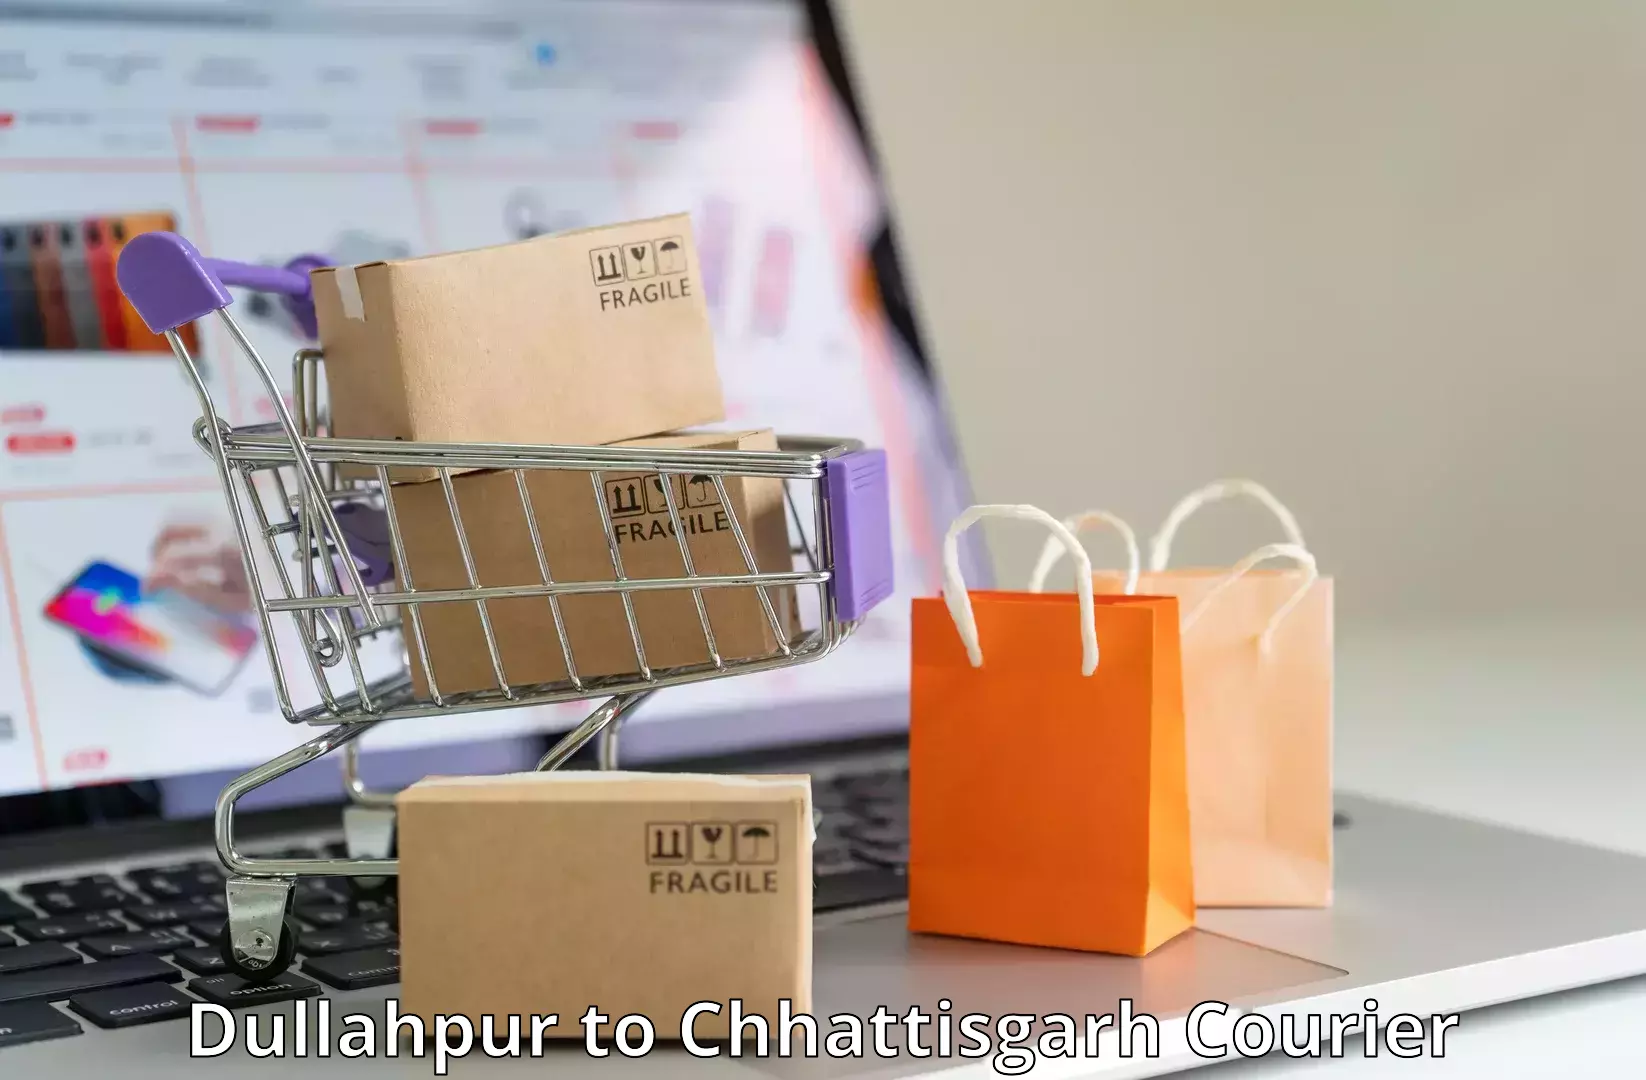 Courier service comparison Dullahpur to Jashpur